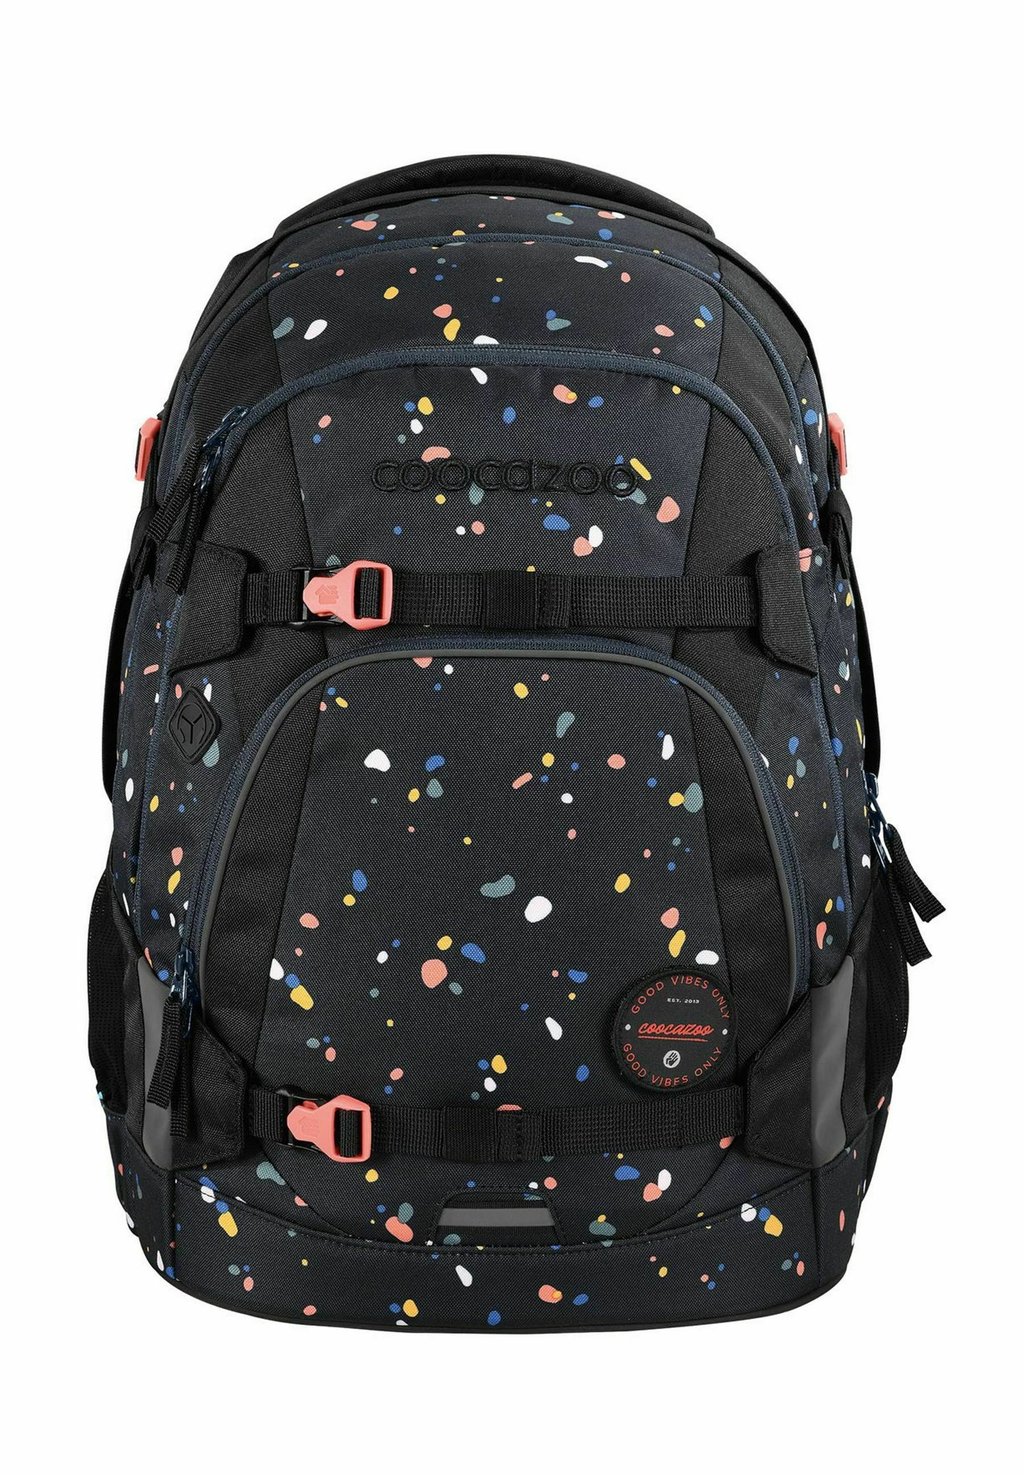 Школьная сумка MATE coocazoo, цвет sprinkled candy